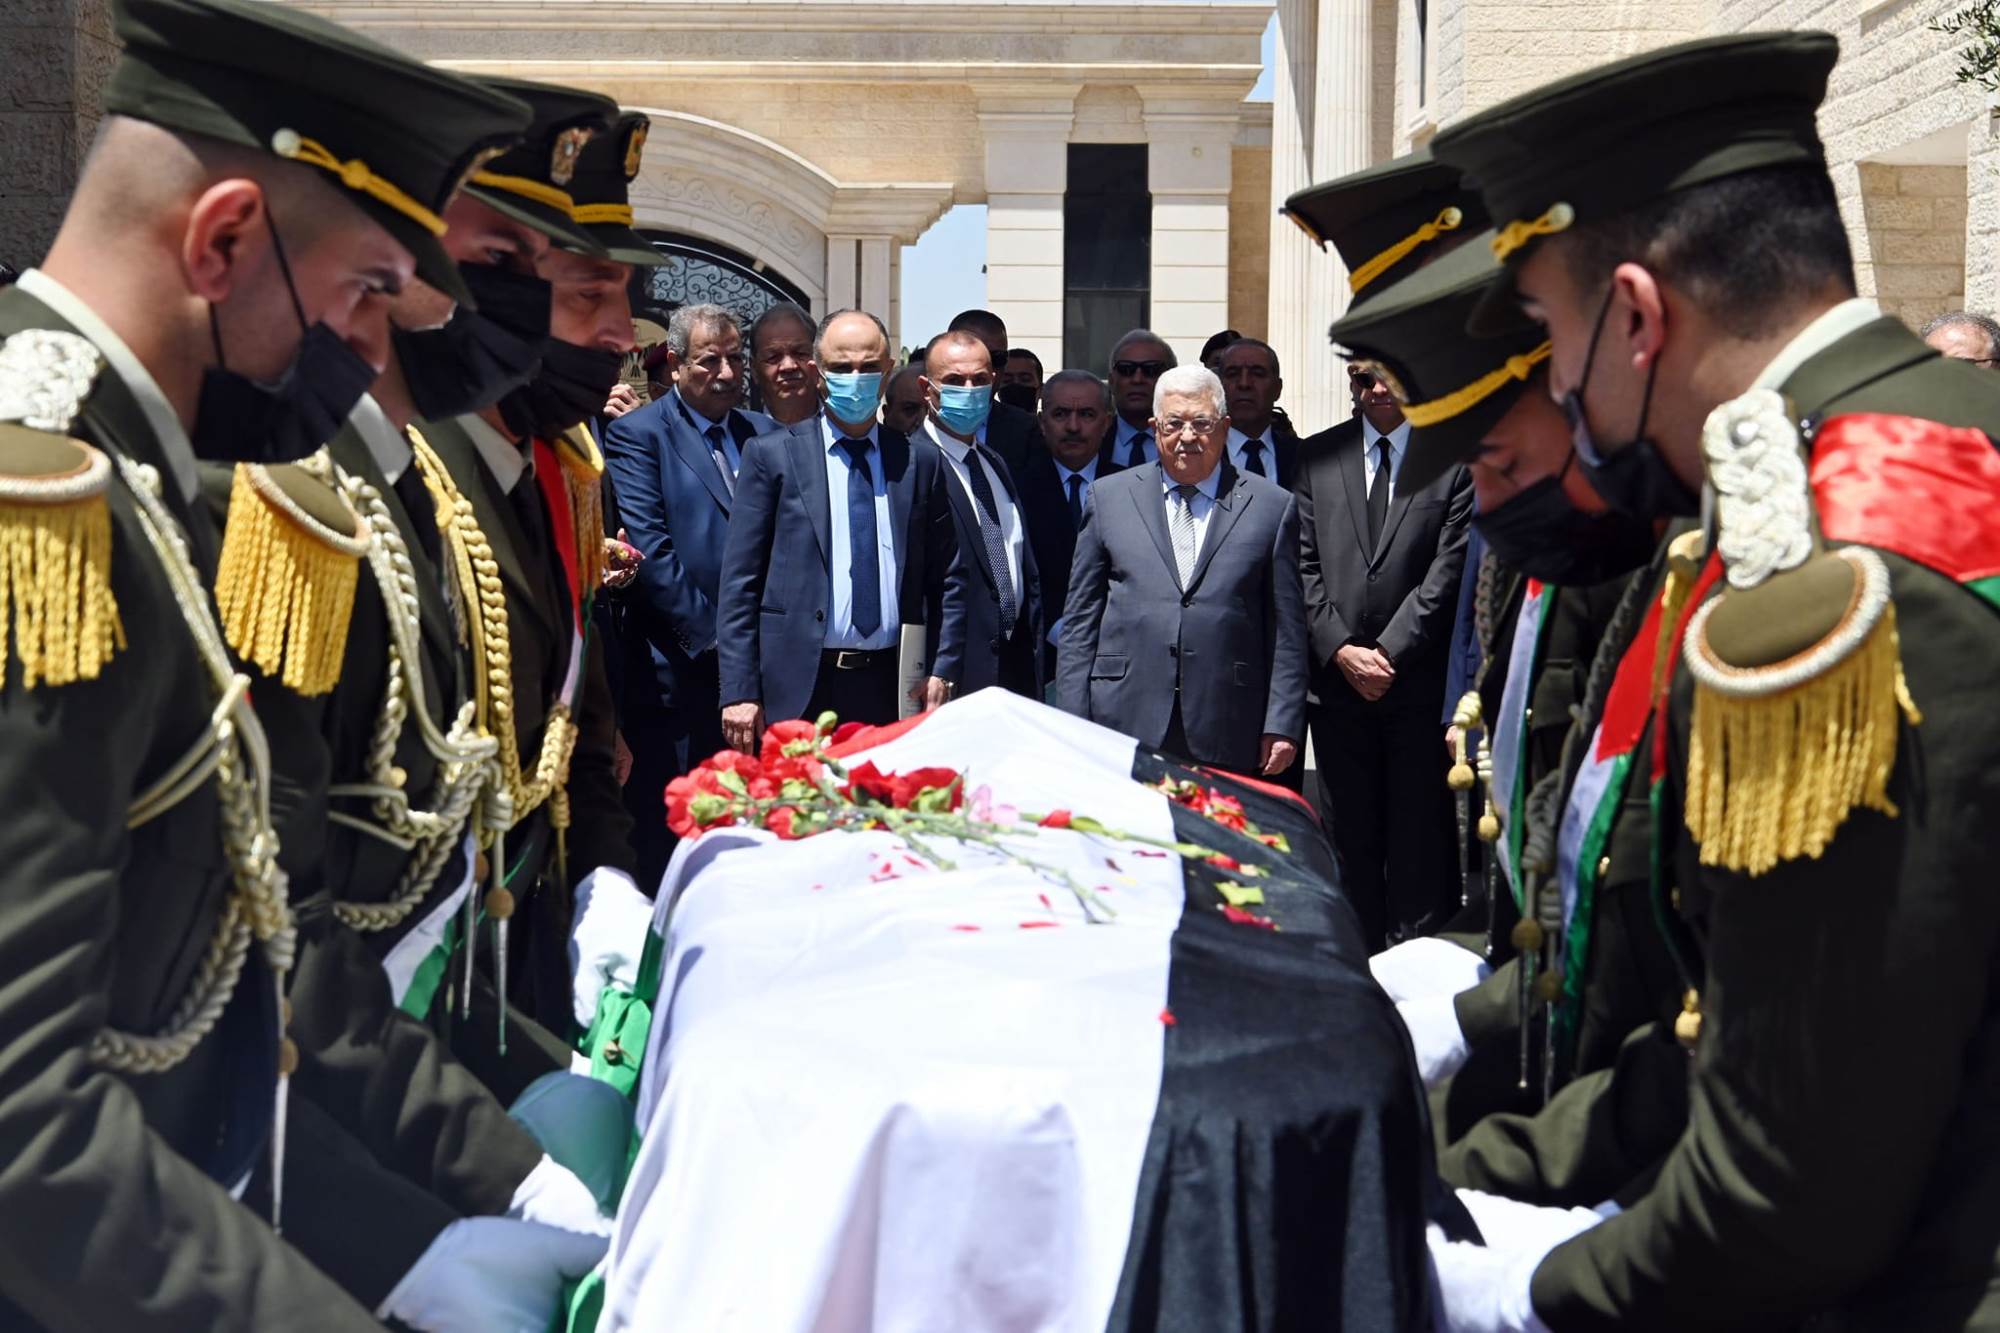  الرئيس الفلسطيني يضع إكليلا من الزهور على جثمان الشهيدة أبو عاقلة